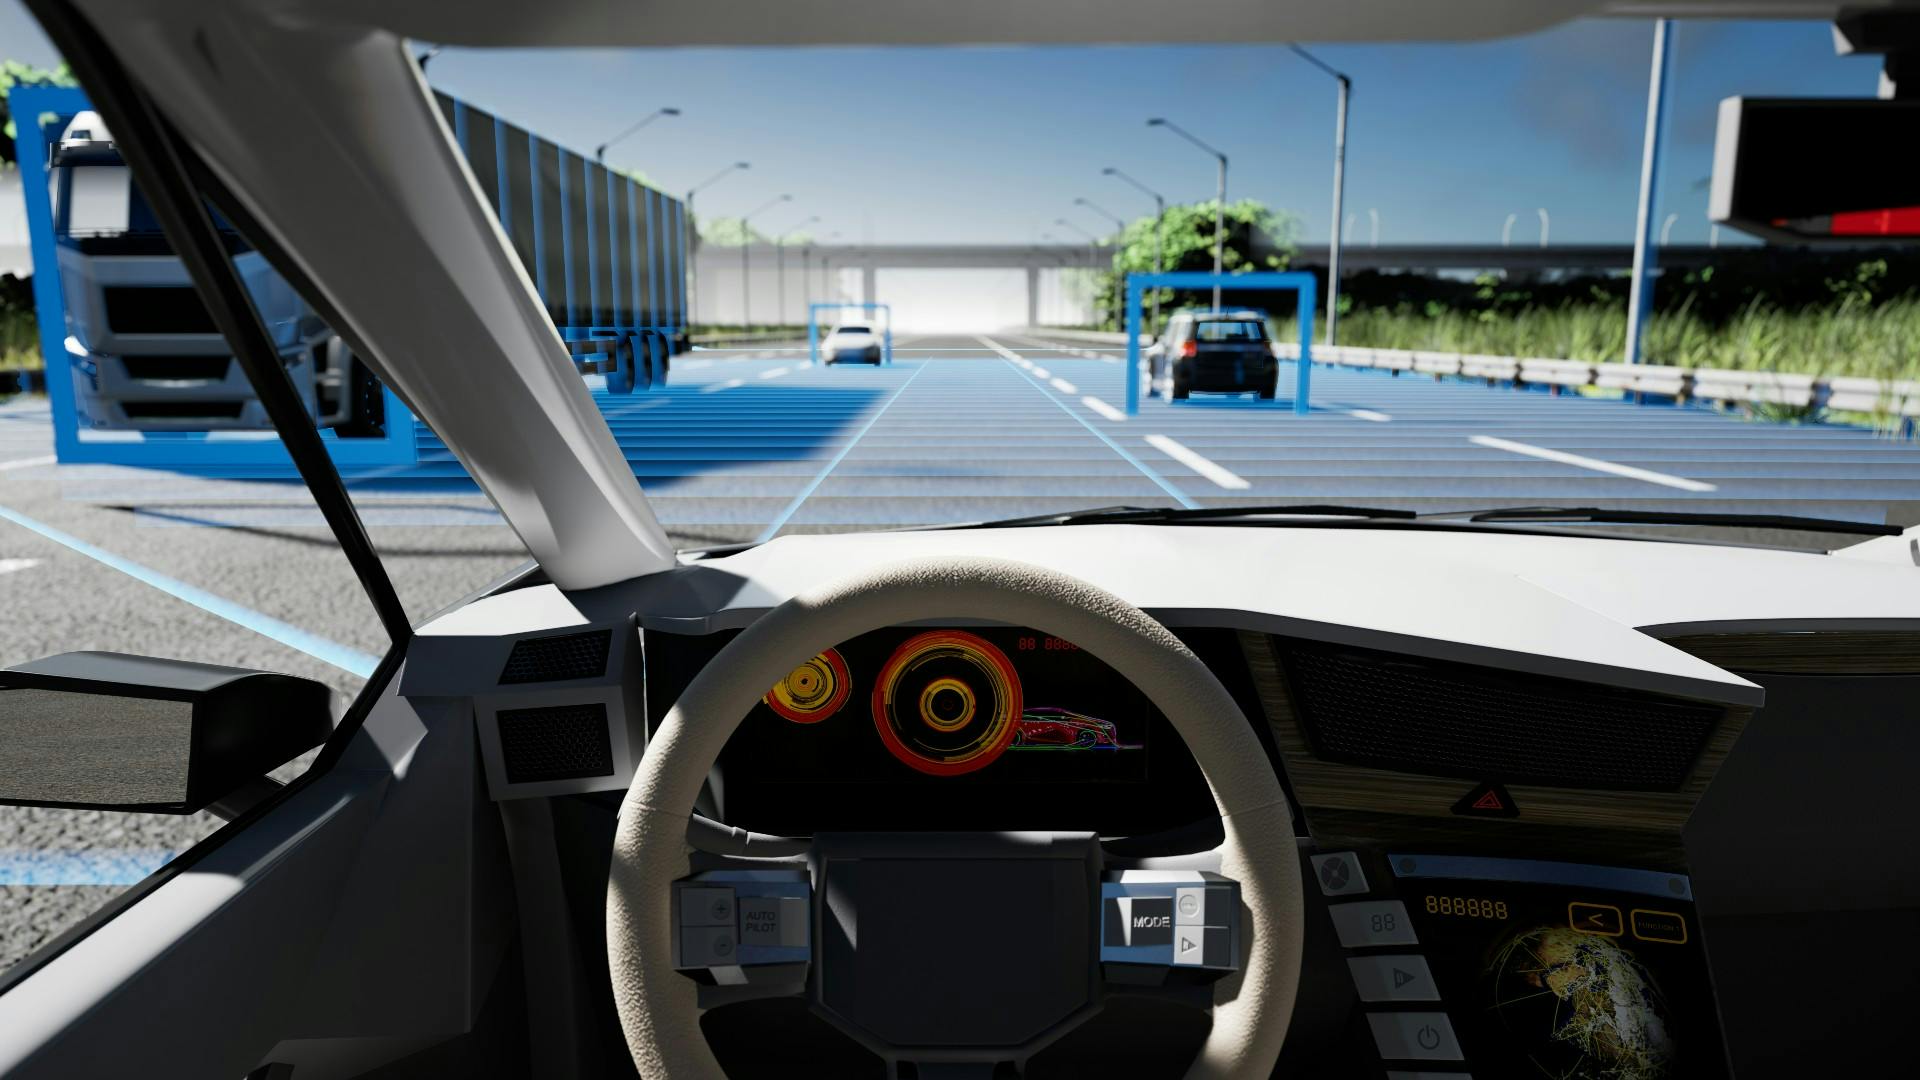 認識センシング・システムを使用して道路上の他の車両との距離を評価する自動運転車 (AV) の内部ビュー。